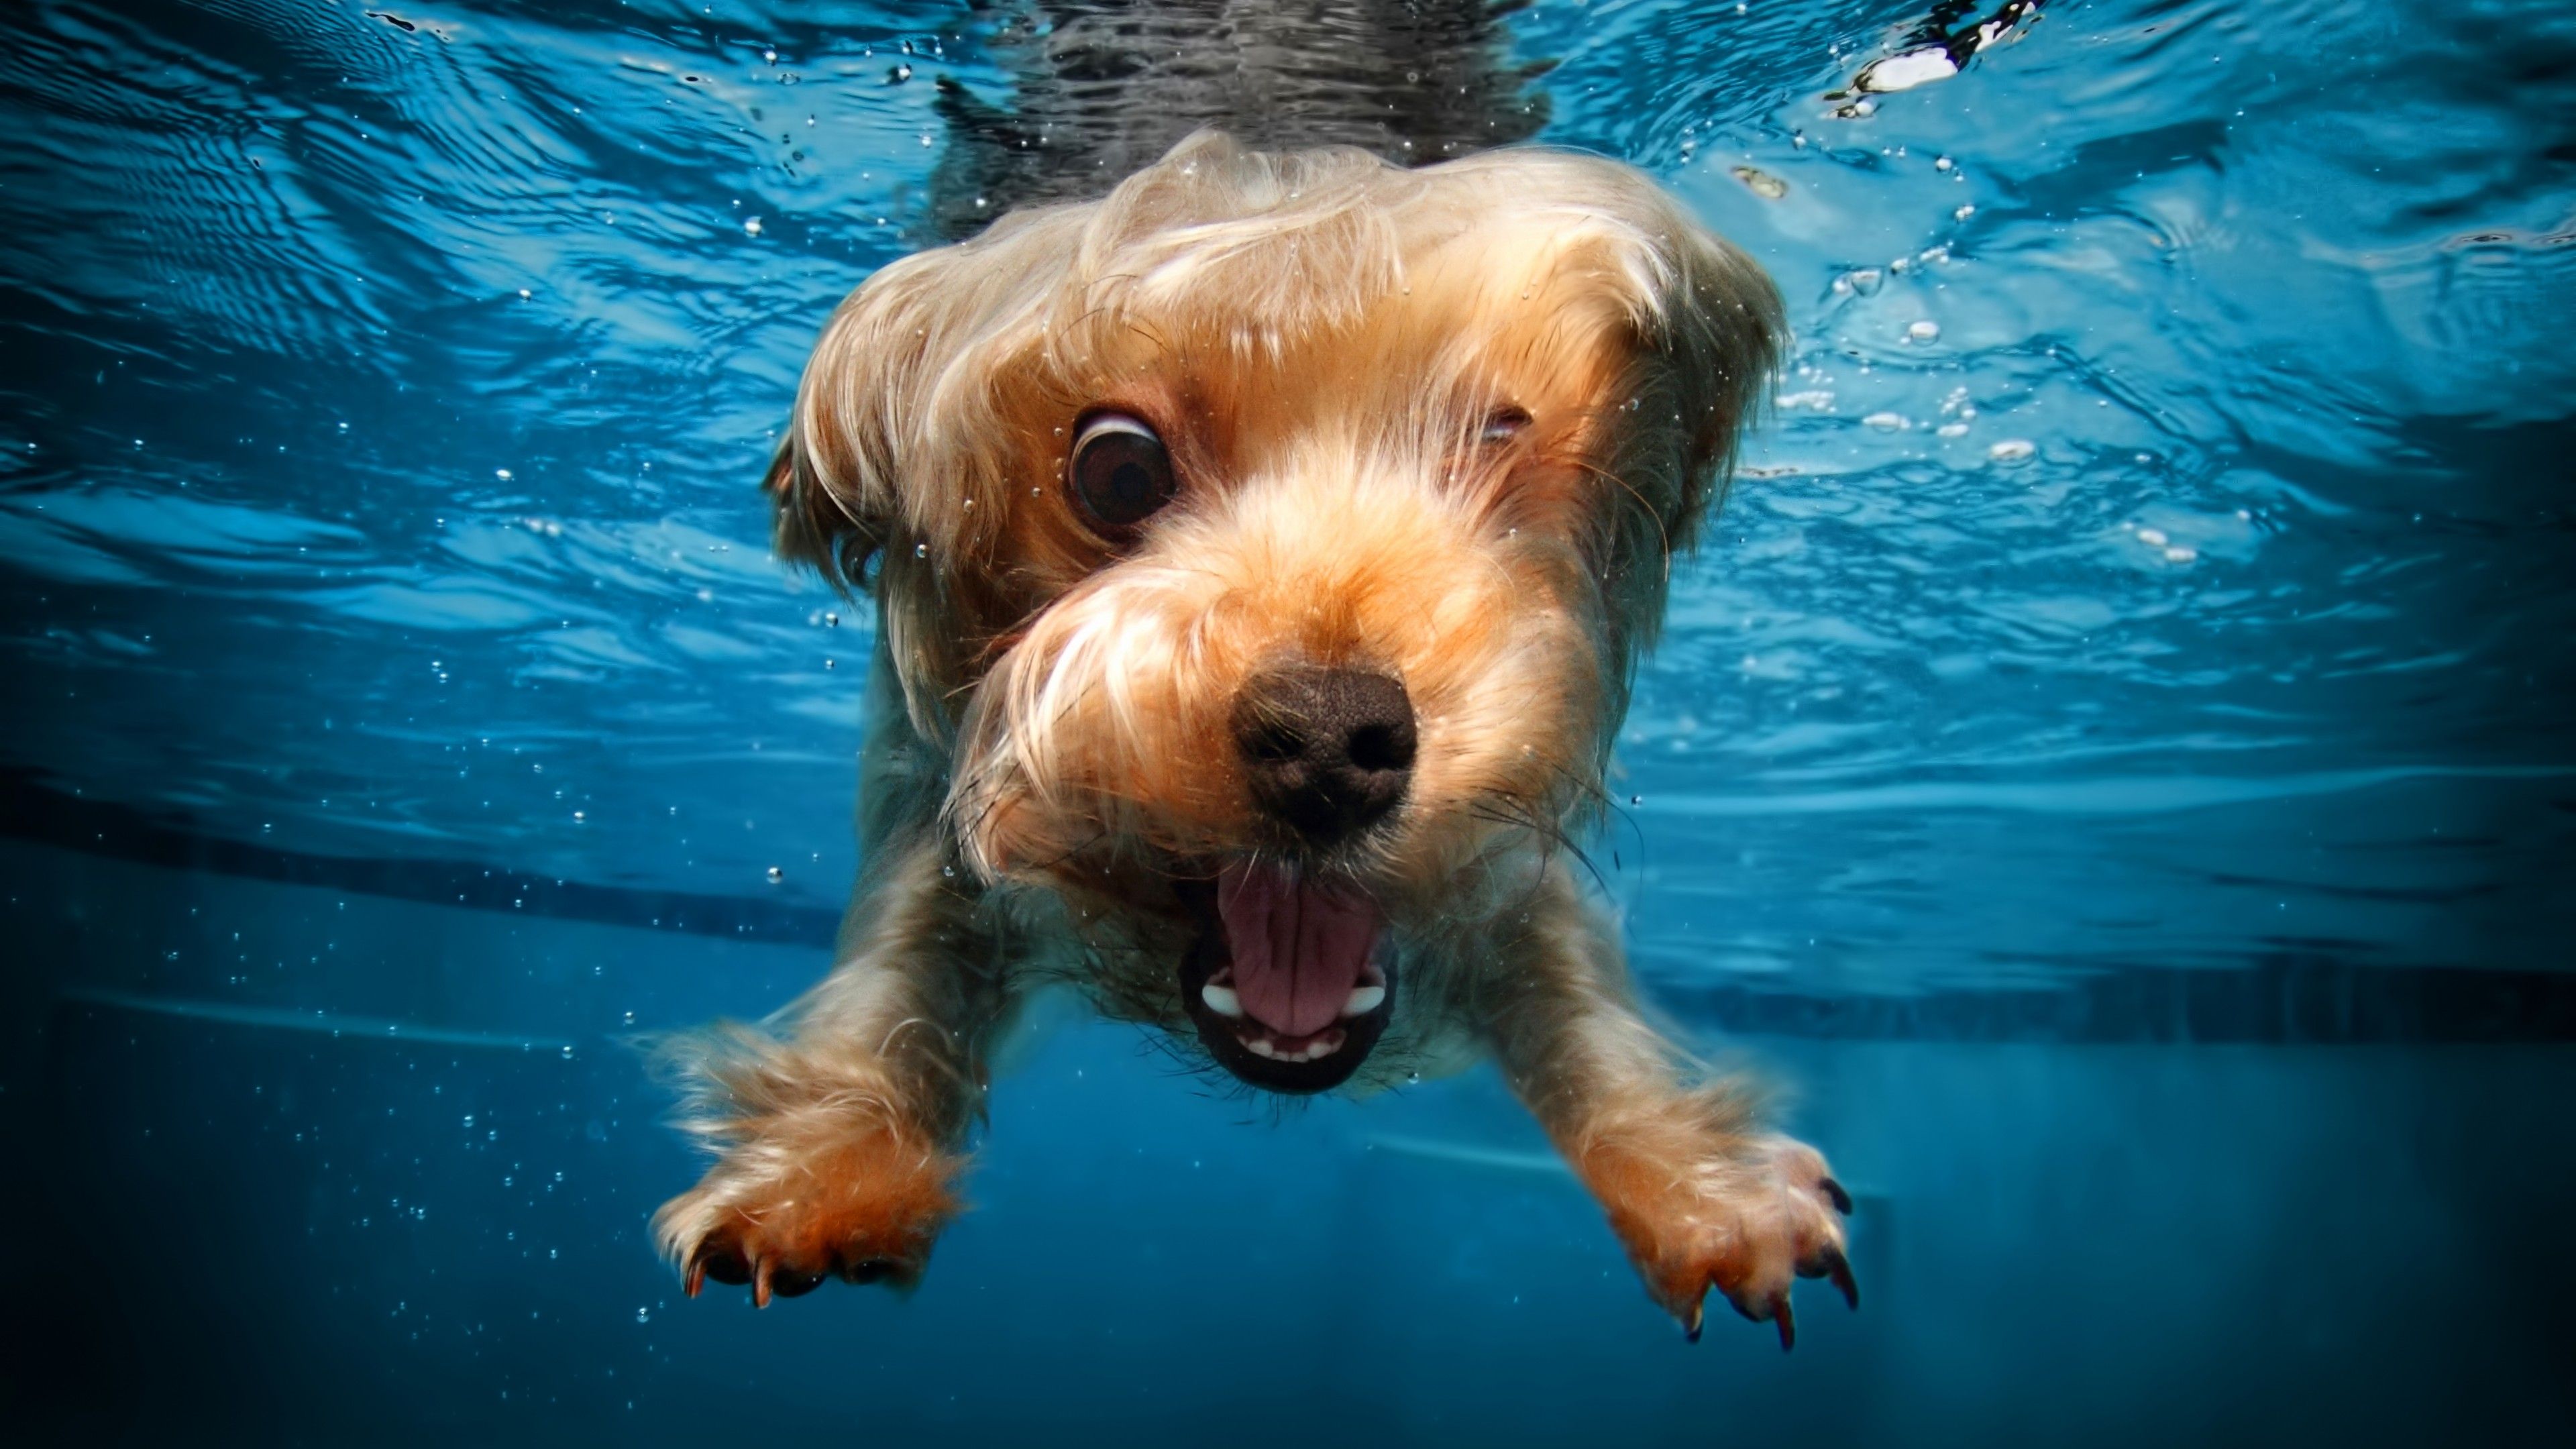 Dogs Underwater Wallpaper Free Dogs Underwater Background